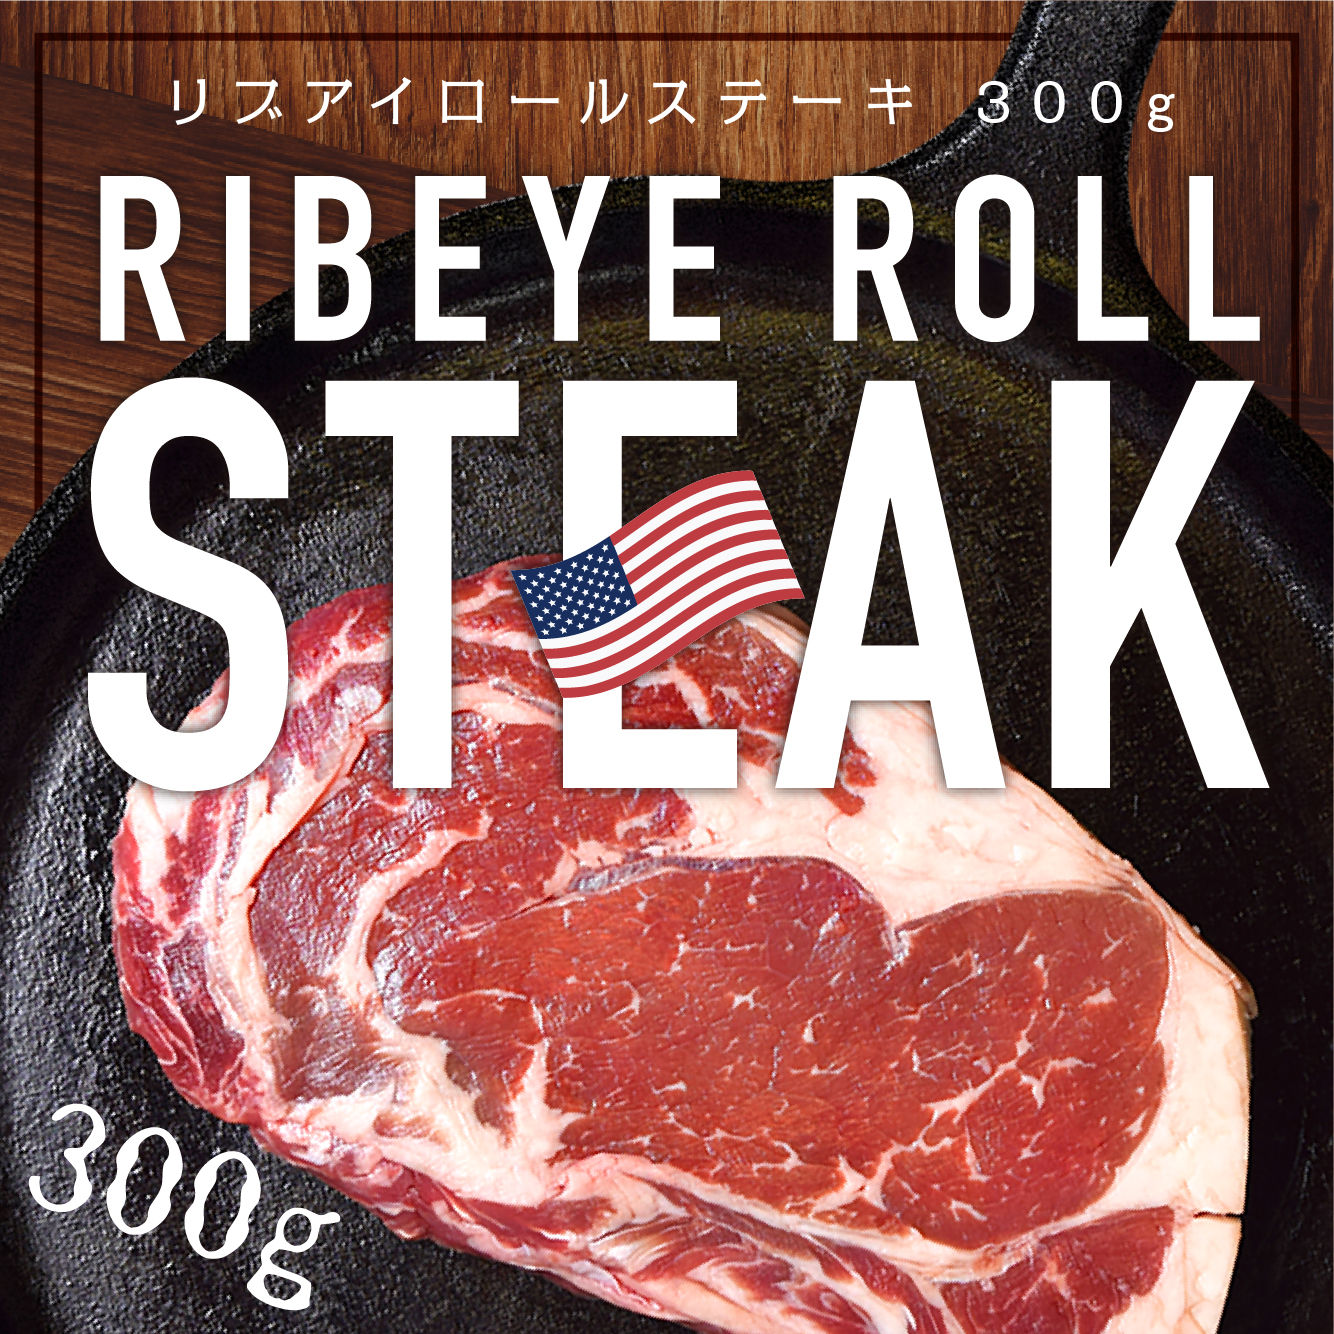 楽天市場 厚切りリブロース ステーキ 300g リブアイロール アメリカ産 牛肉 ロース ステーキ肉 肉の卸問屋アオノ